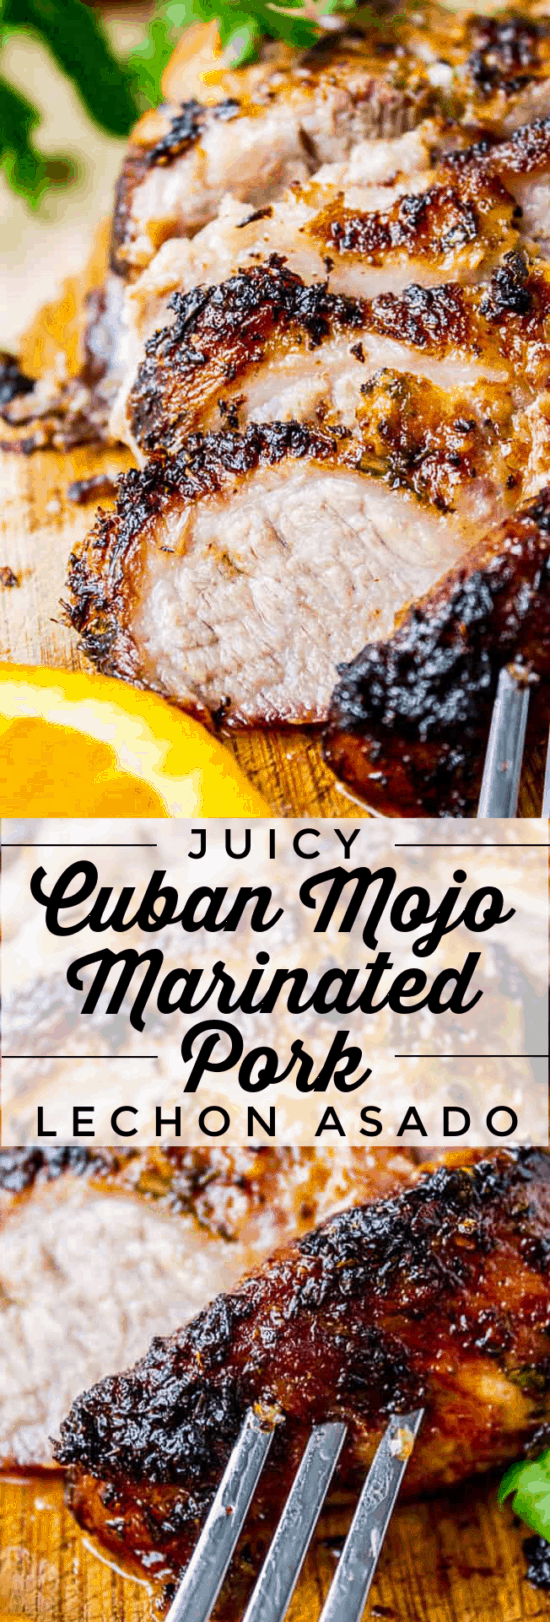 cuban mojo pork shoulder sliced with a fork